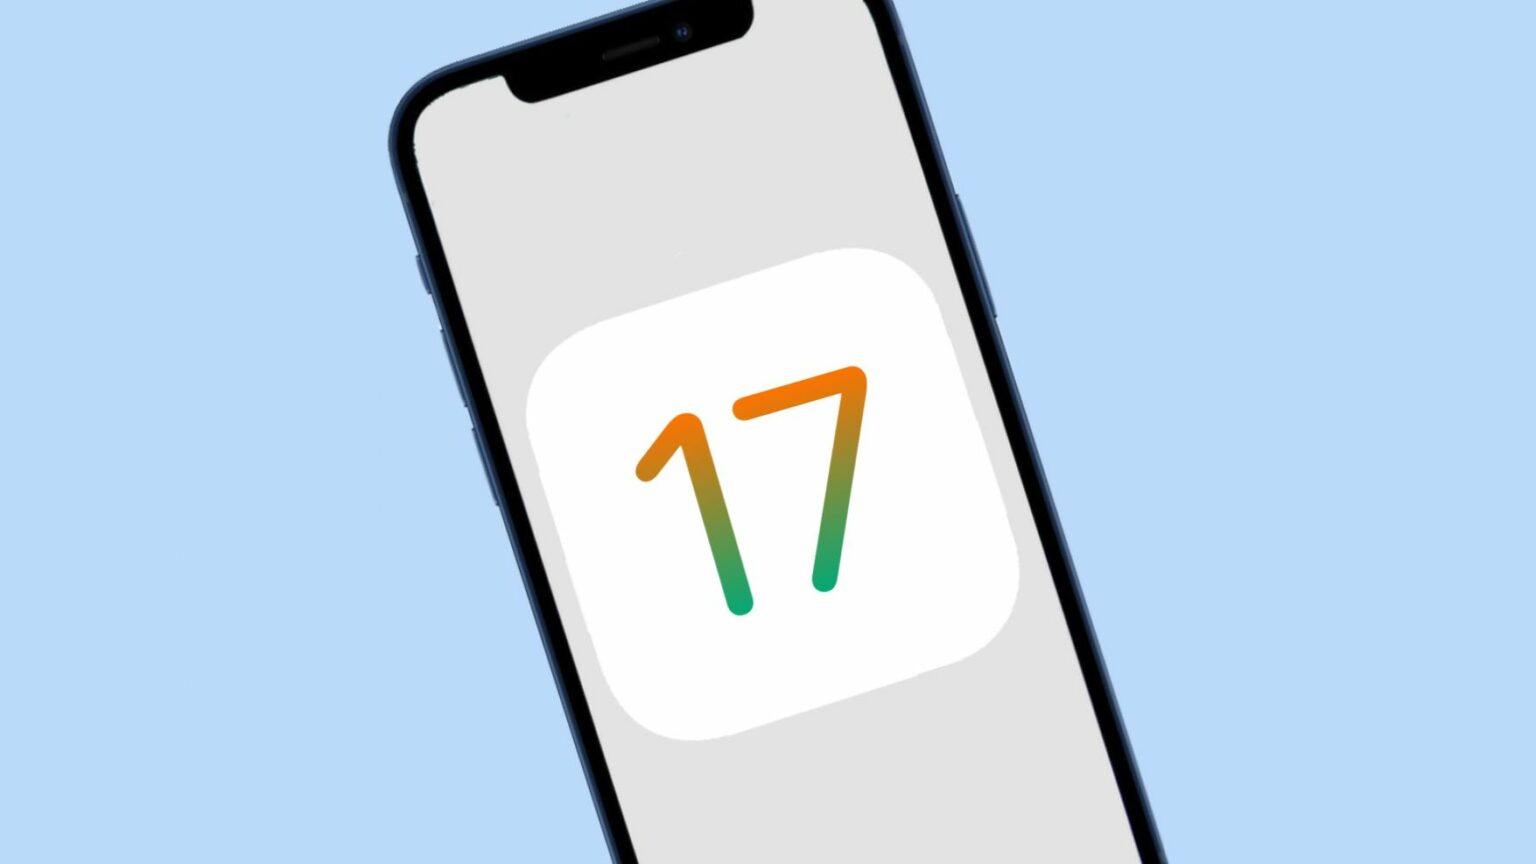 iPhone with an iOS 17 logo